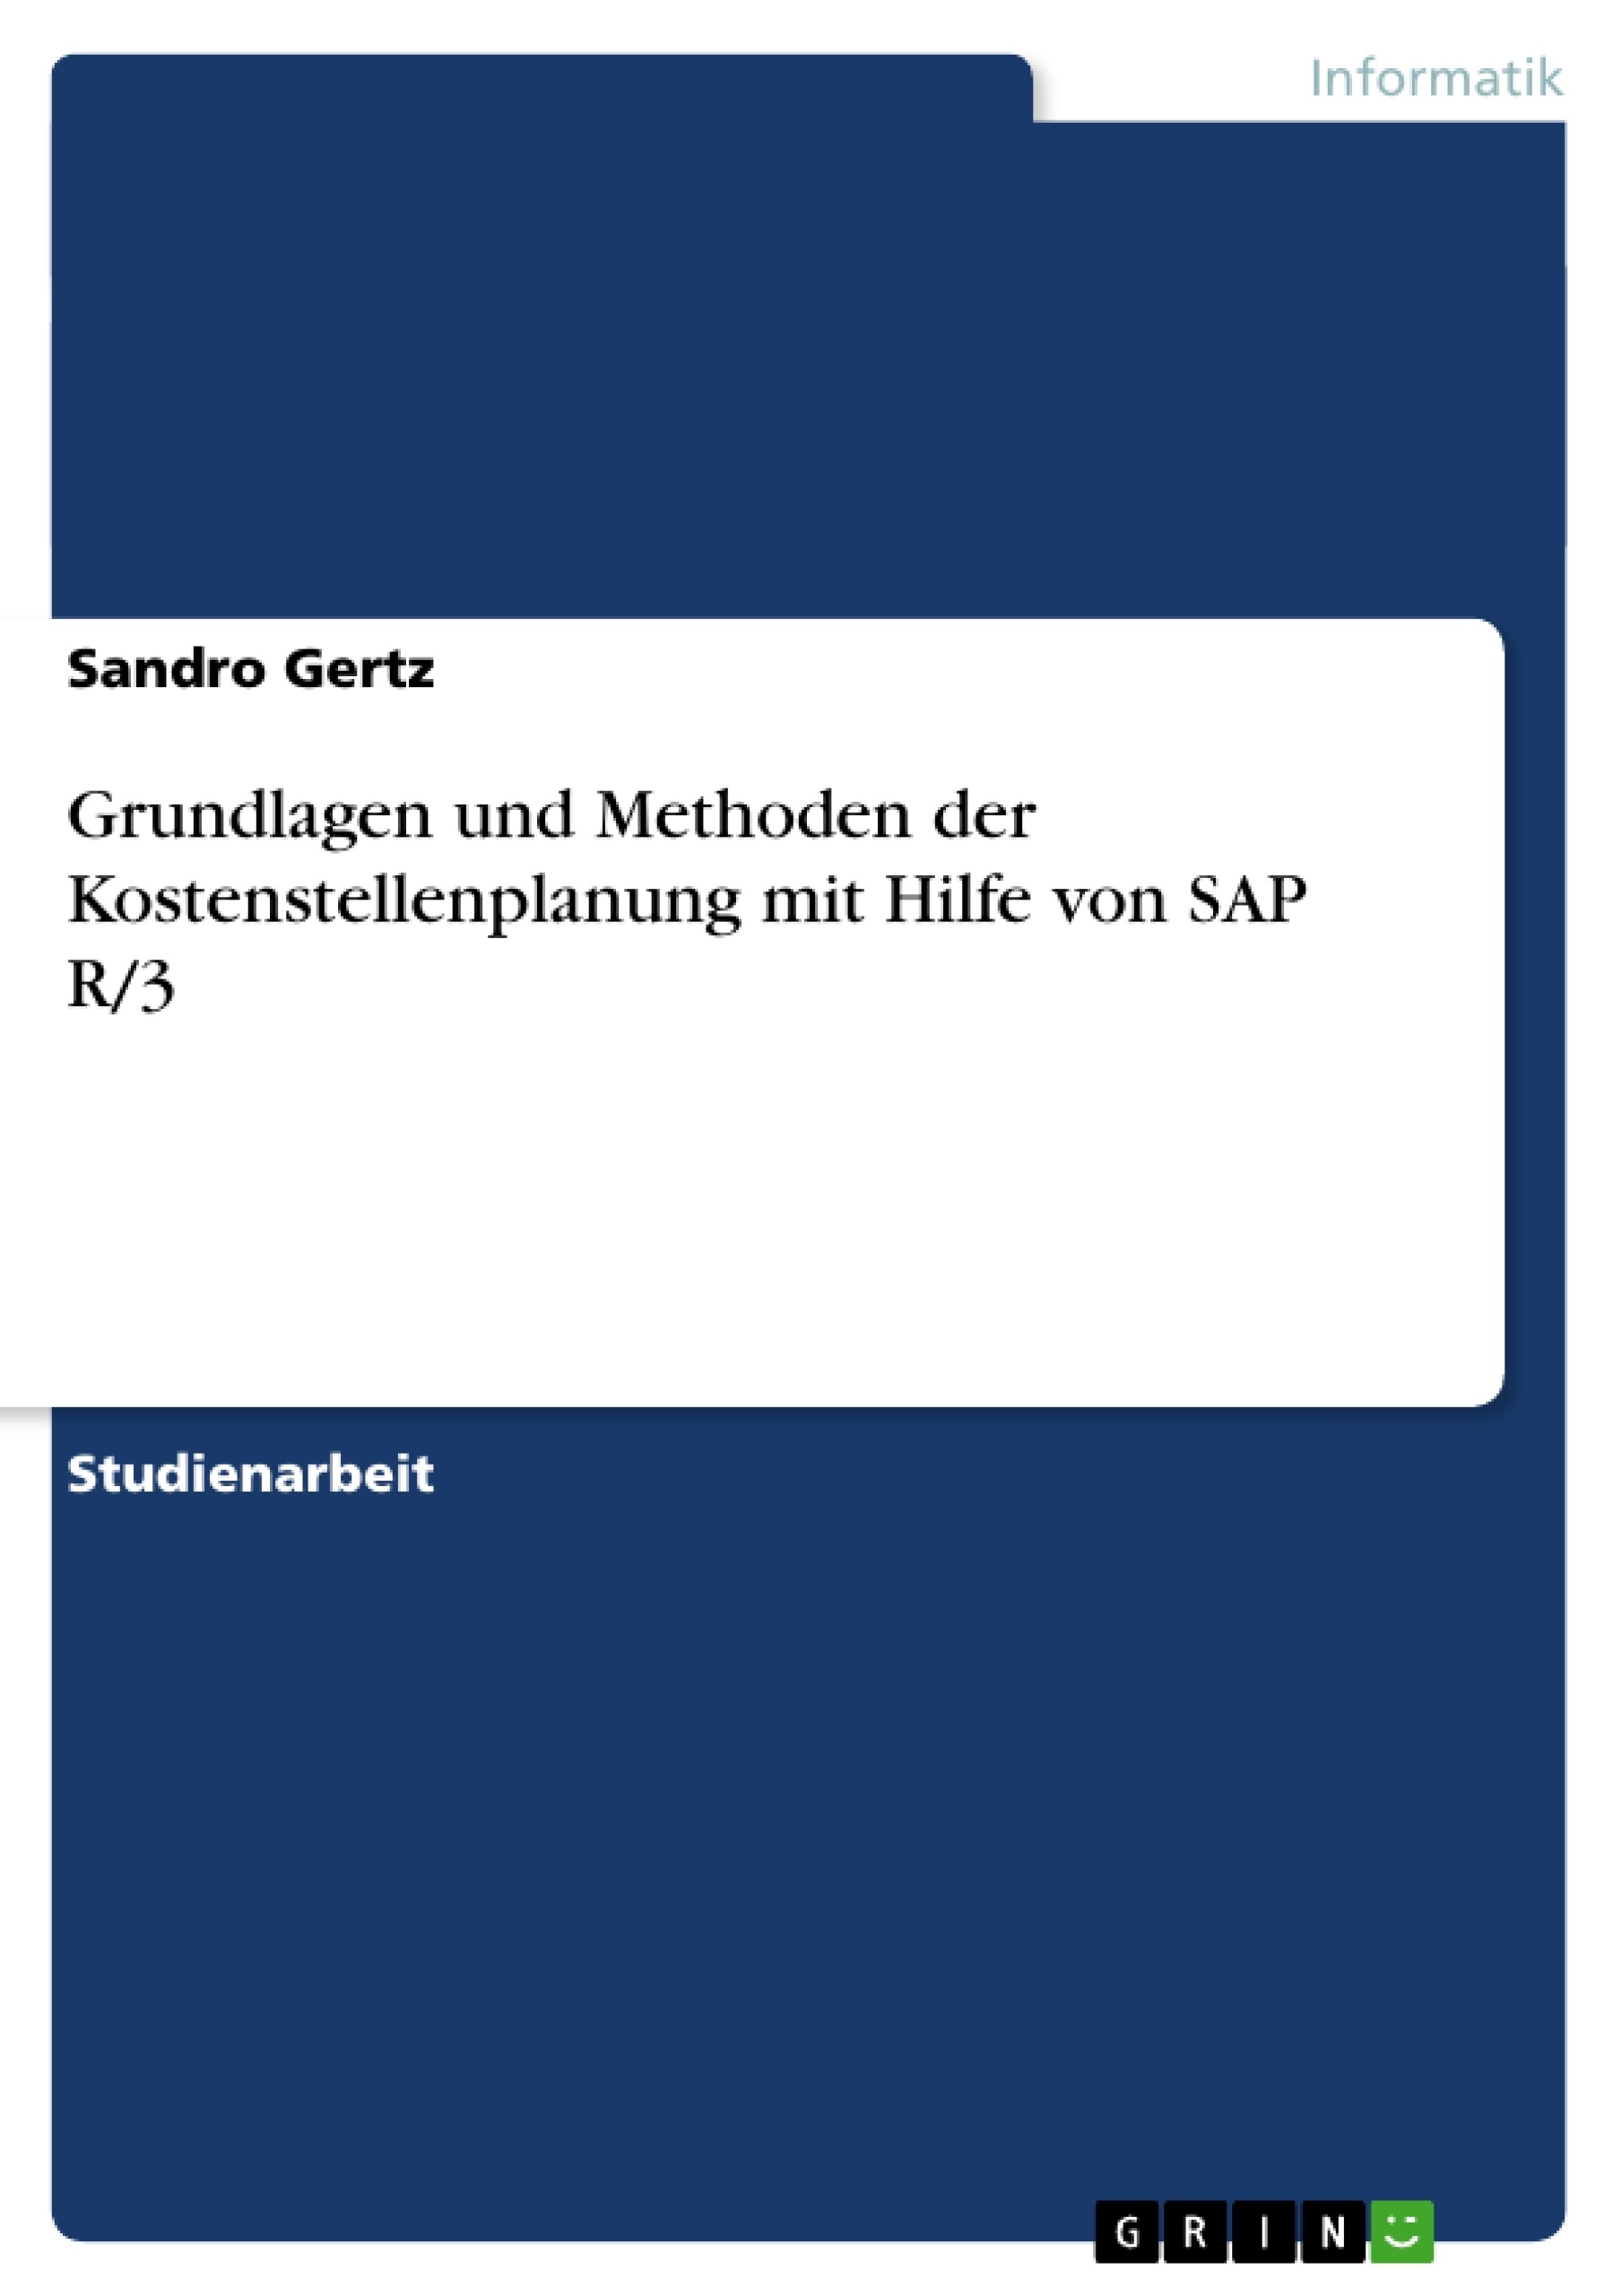 Título: Grundlagen und Methoden der Kostenstellenplanung mit Hilfe von SAP R/3